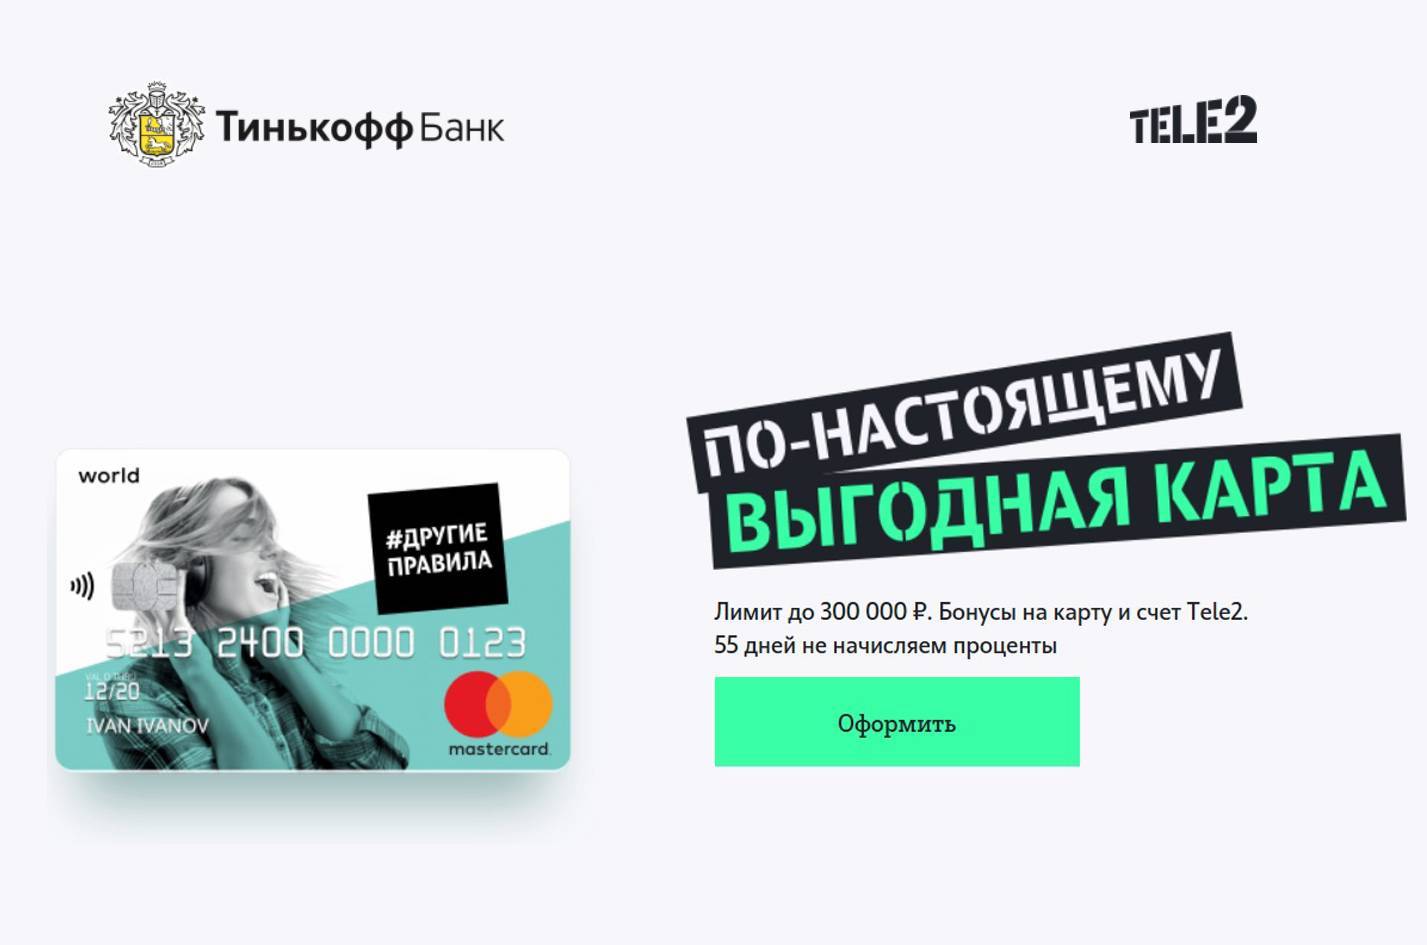 Тинькофф банк ​совместно с tele2 выпустил кобрендовую карту «другие правила»​ 08.12.2017 | банки.ру